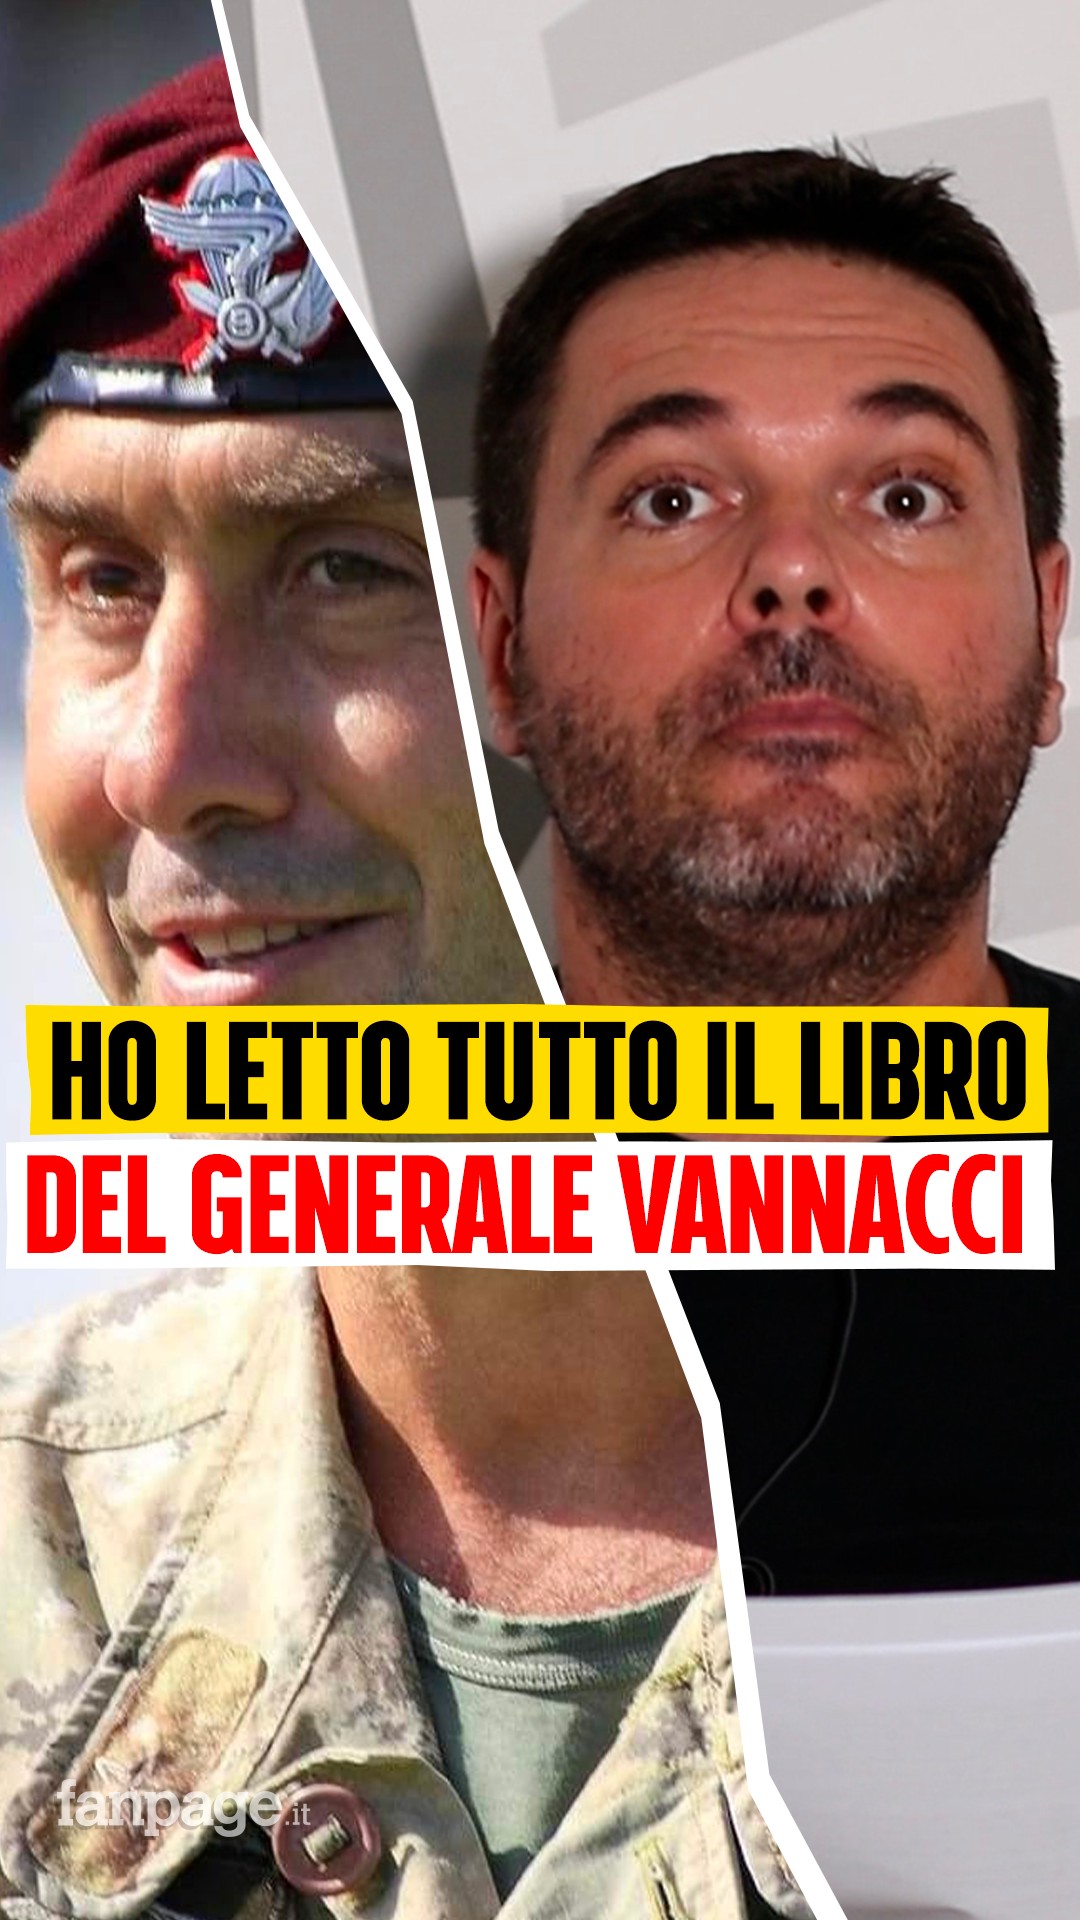 Fanpage.it on X: Ho letto il libro del generale Roberto Vannacci